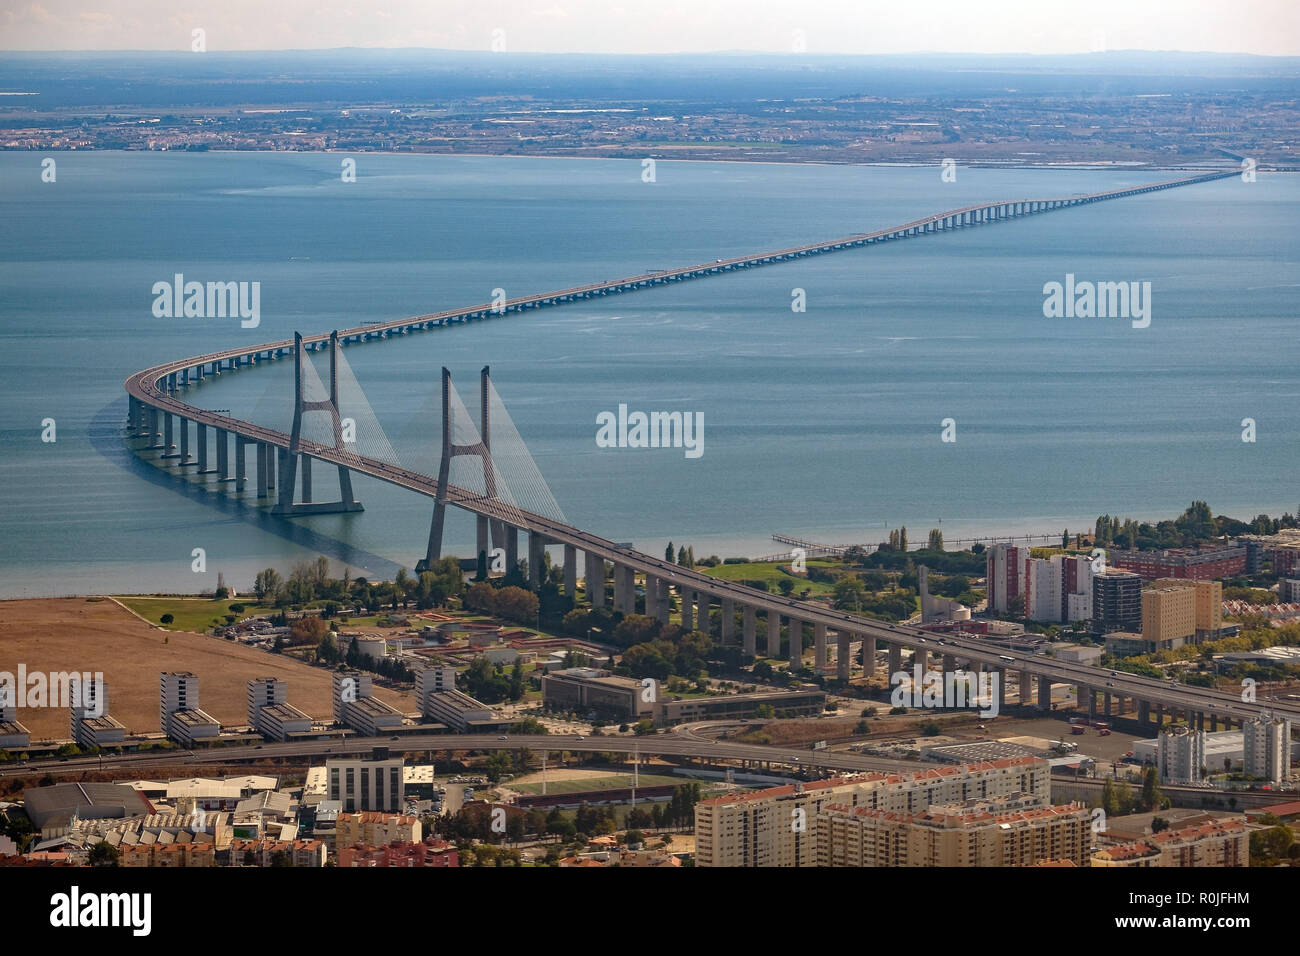 Vista aerea del ponte Vasco da Gama sul fiume Tago a Lisbona, Portogallo, Europa Foto Stock